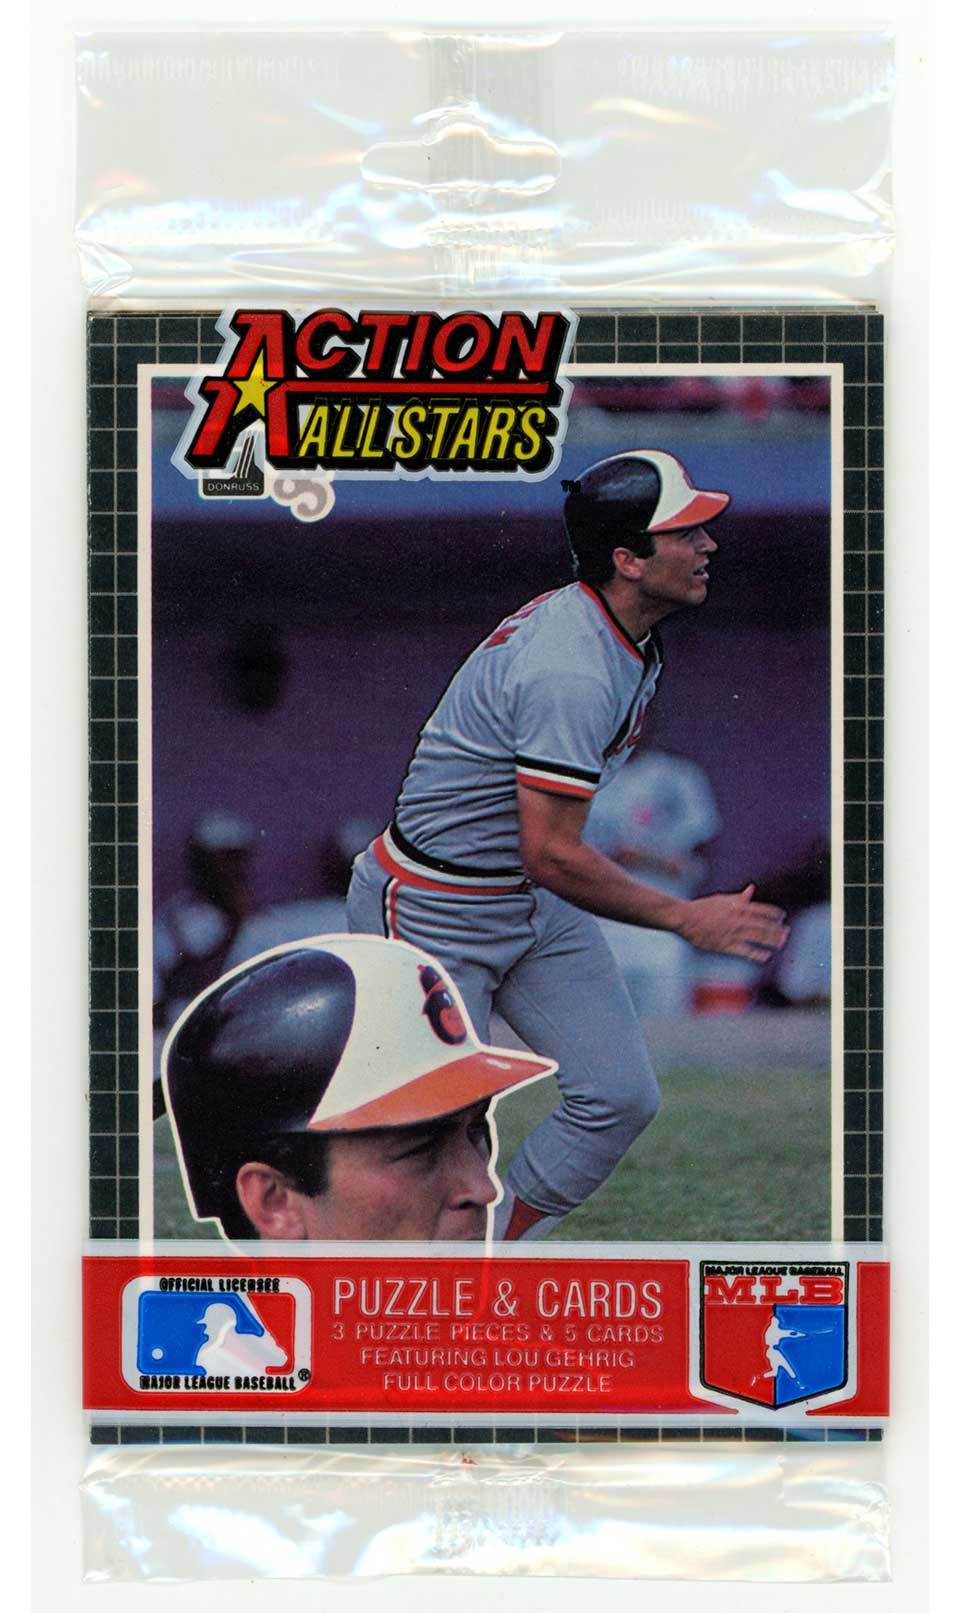 1985 Donruss Action All - Stars Sealed Pack Cal Ripken Jr (Front) Robin Yount (Back) C2 Baseball Sealed Pack - Hobby Gems